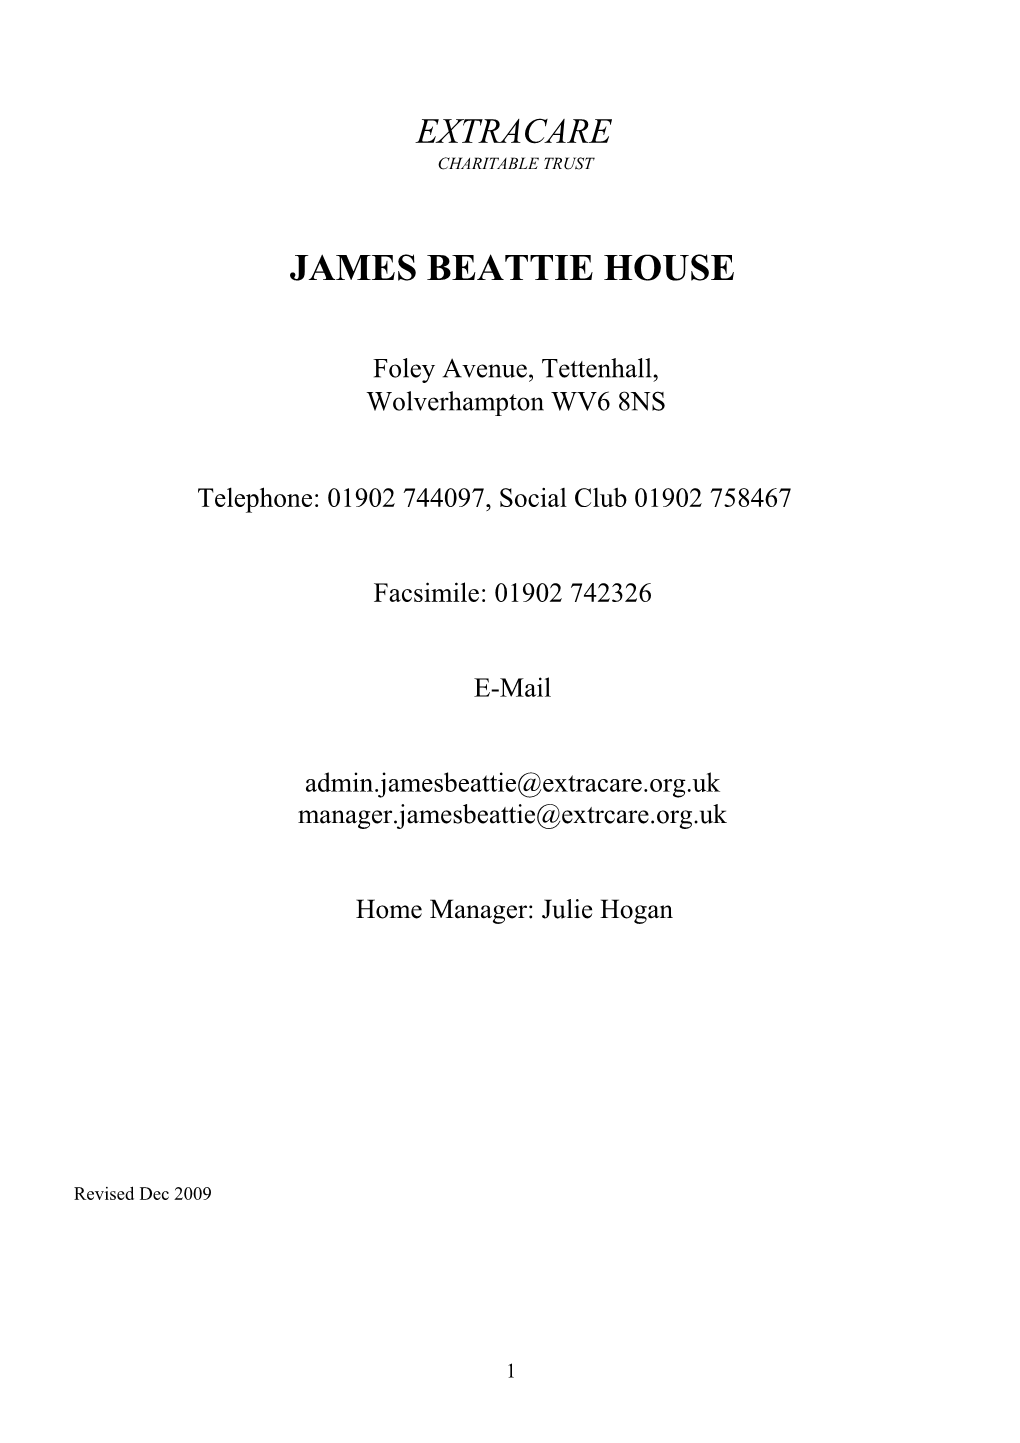 James Beattie House